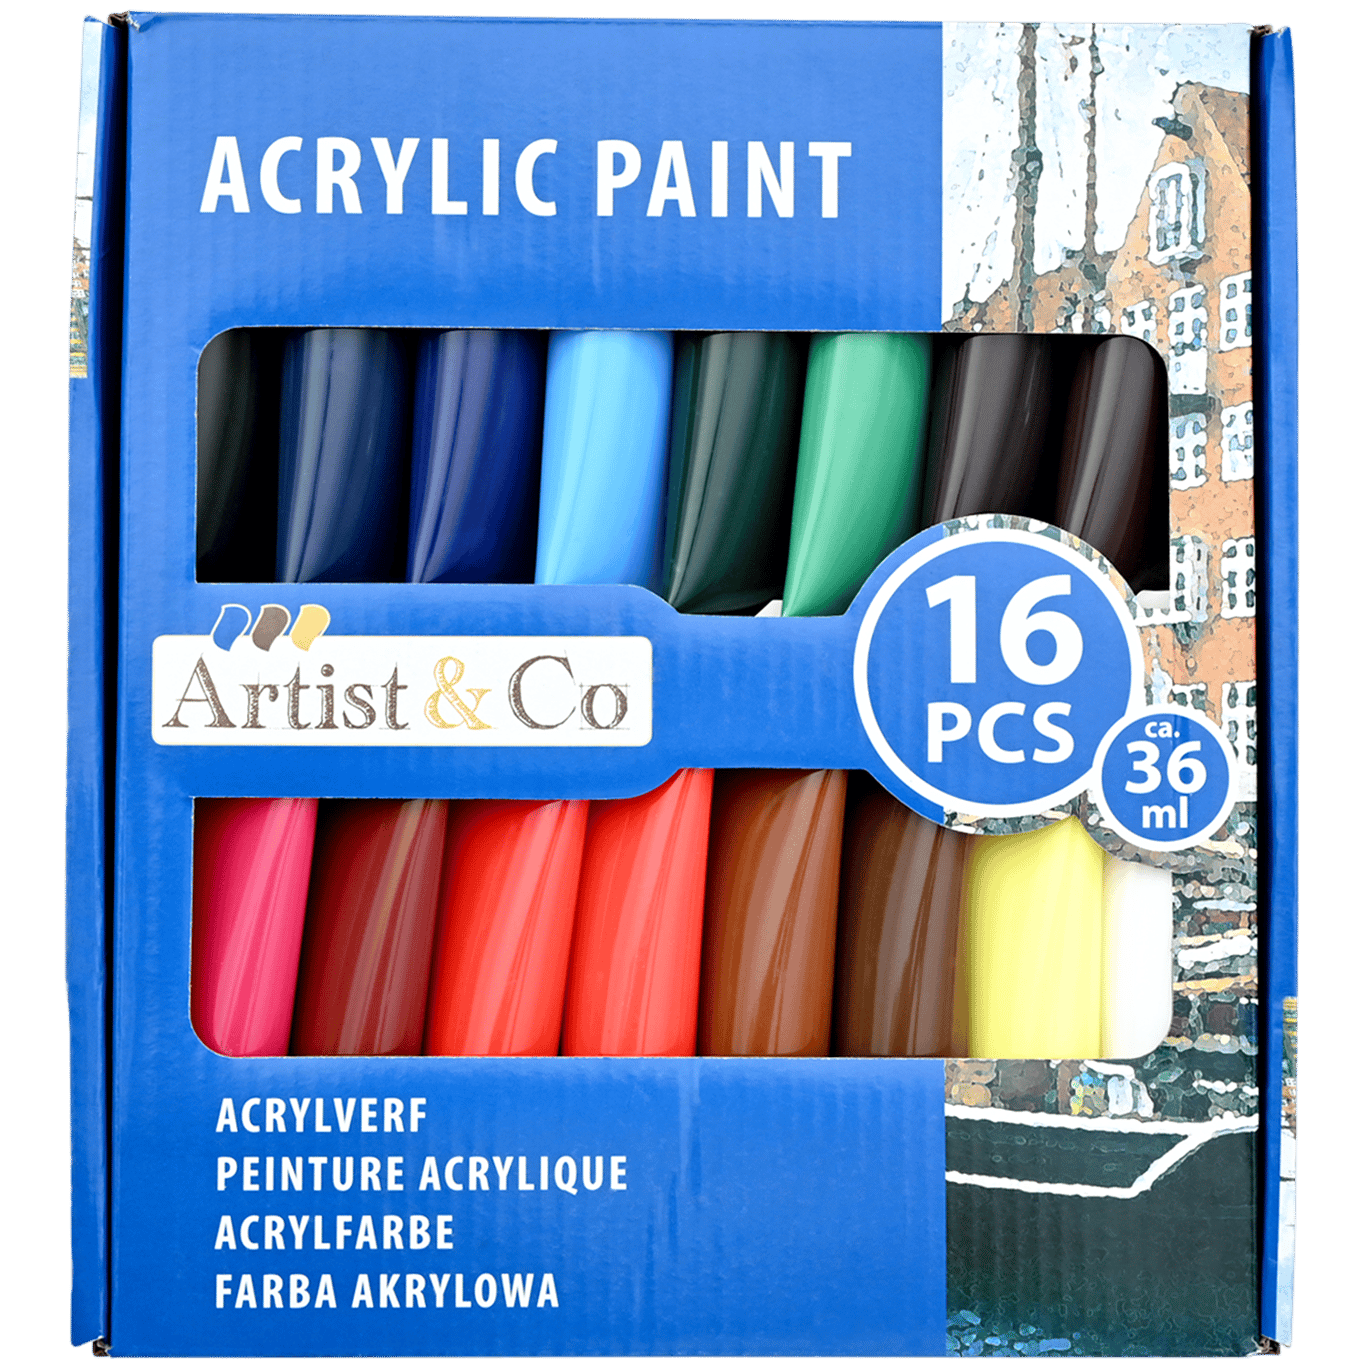 Minister Ziekte eindpunt Artist & Co acrylverf | Action.com